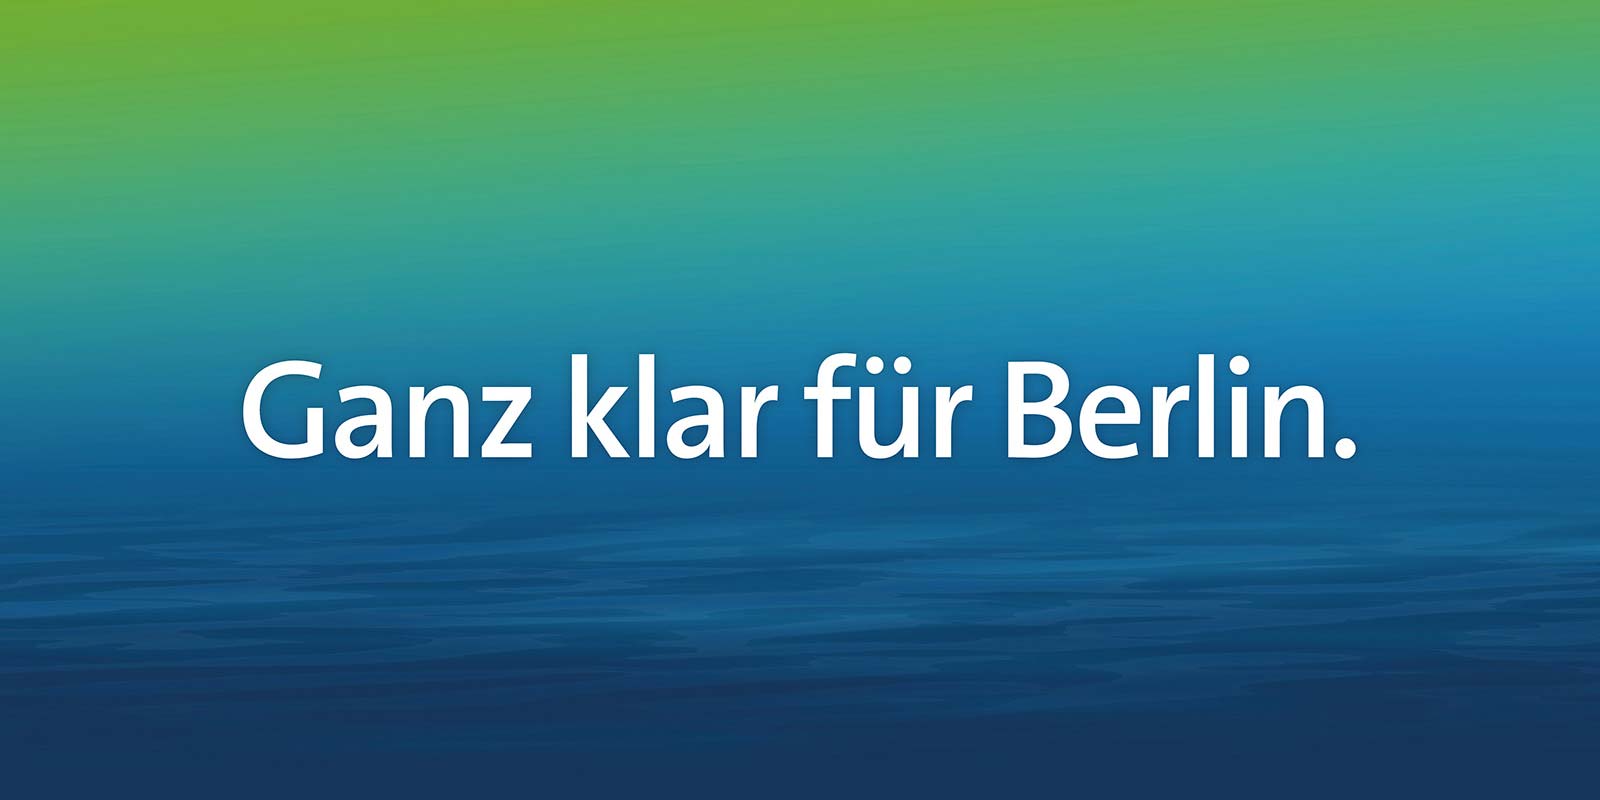 Schriftzug "Ganz klar für Berlin" auf blau-grünem Hintergrund